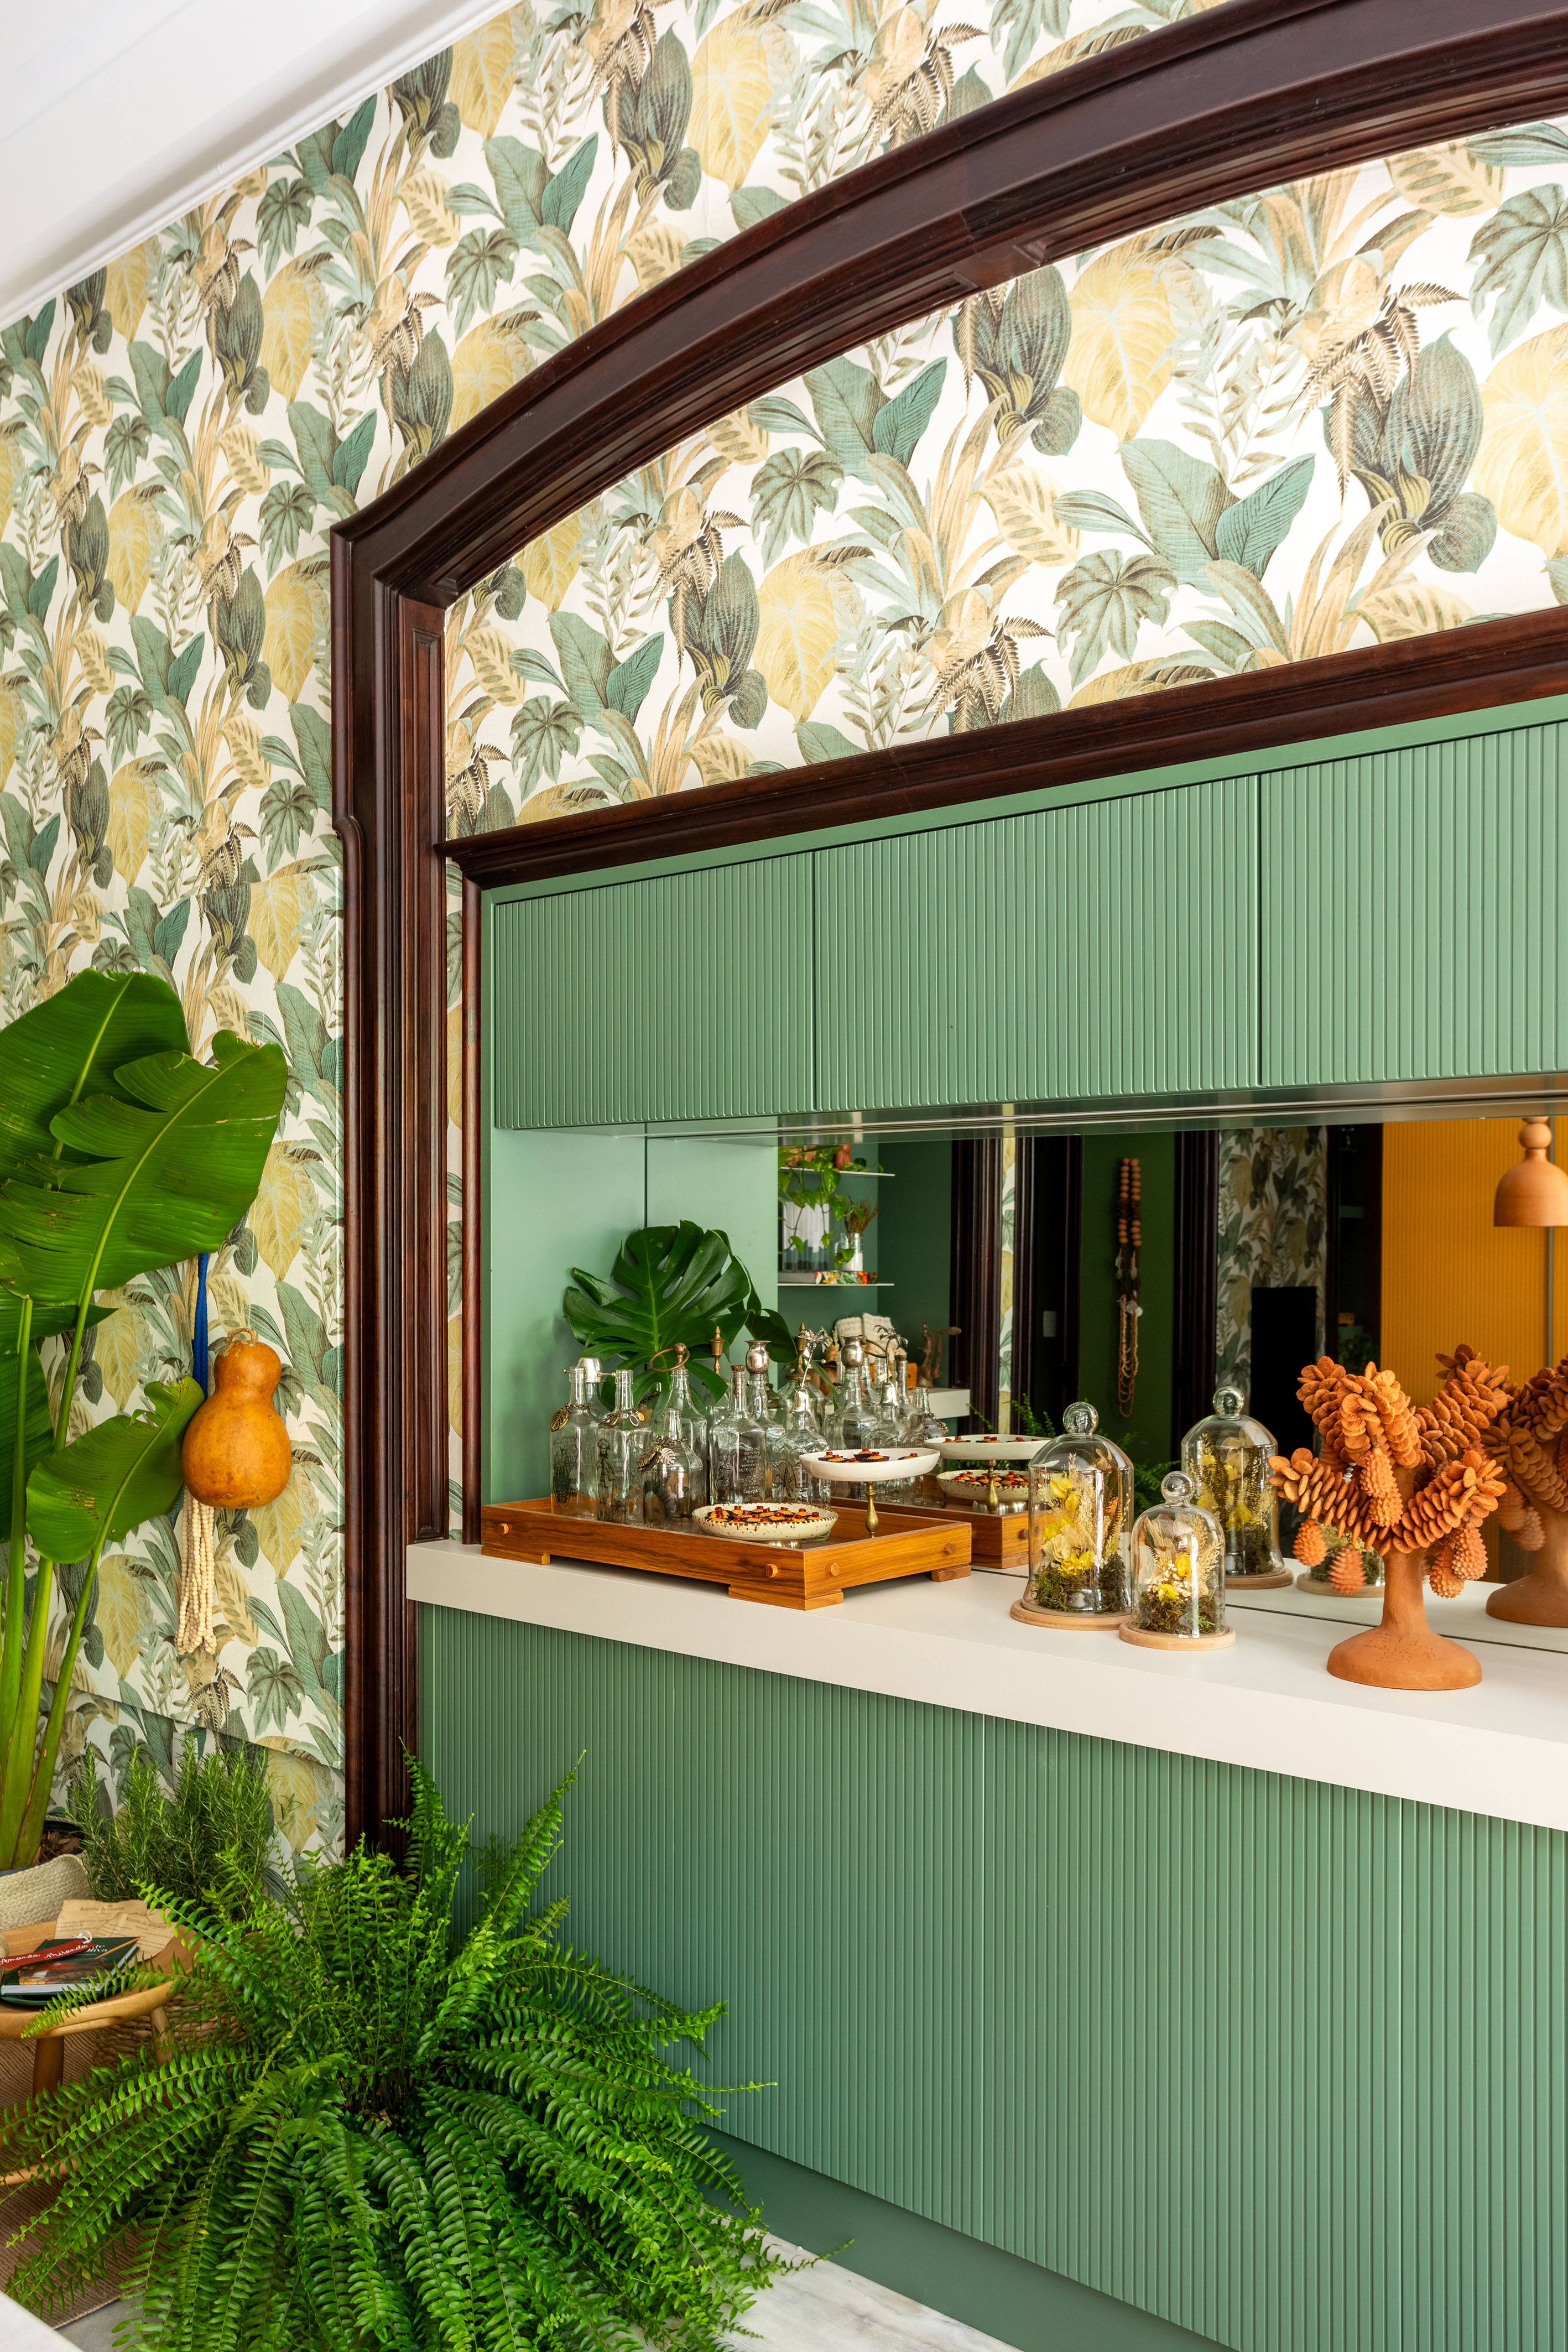 Cozinha com papel de parede de bananeira é repleta de artesanato brasileiro. Projeto de Amanda Miranda para a CASACOR Rio 2023. Na foto, bar da cozinha com marcenaria verde e espelho no backsplash.